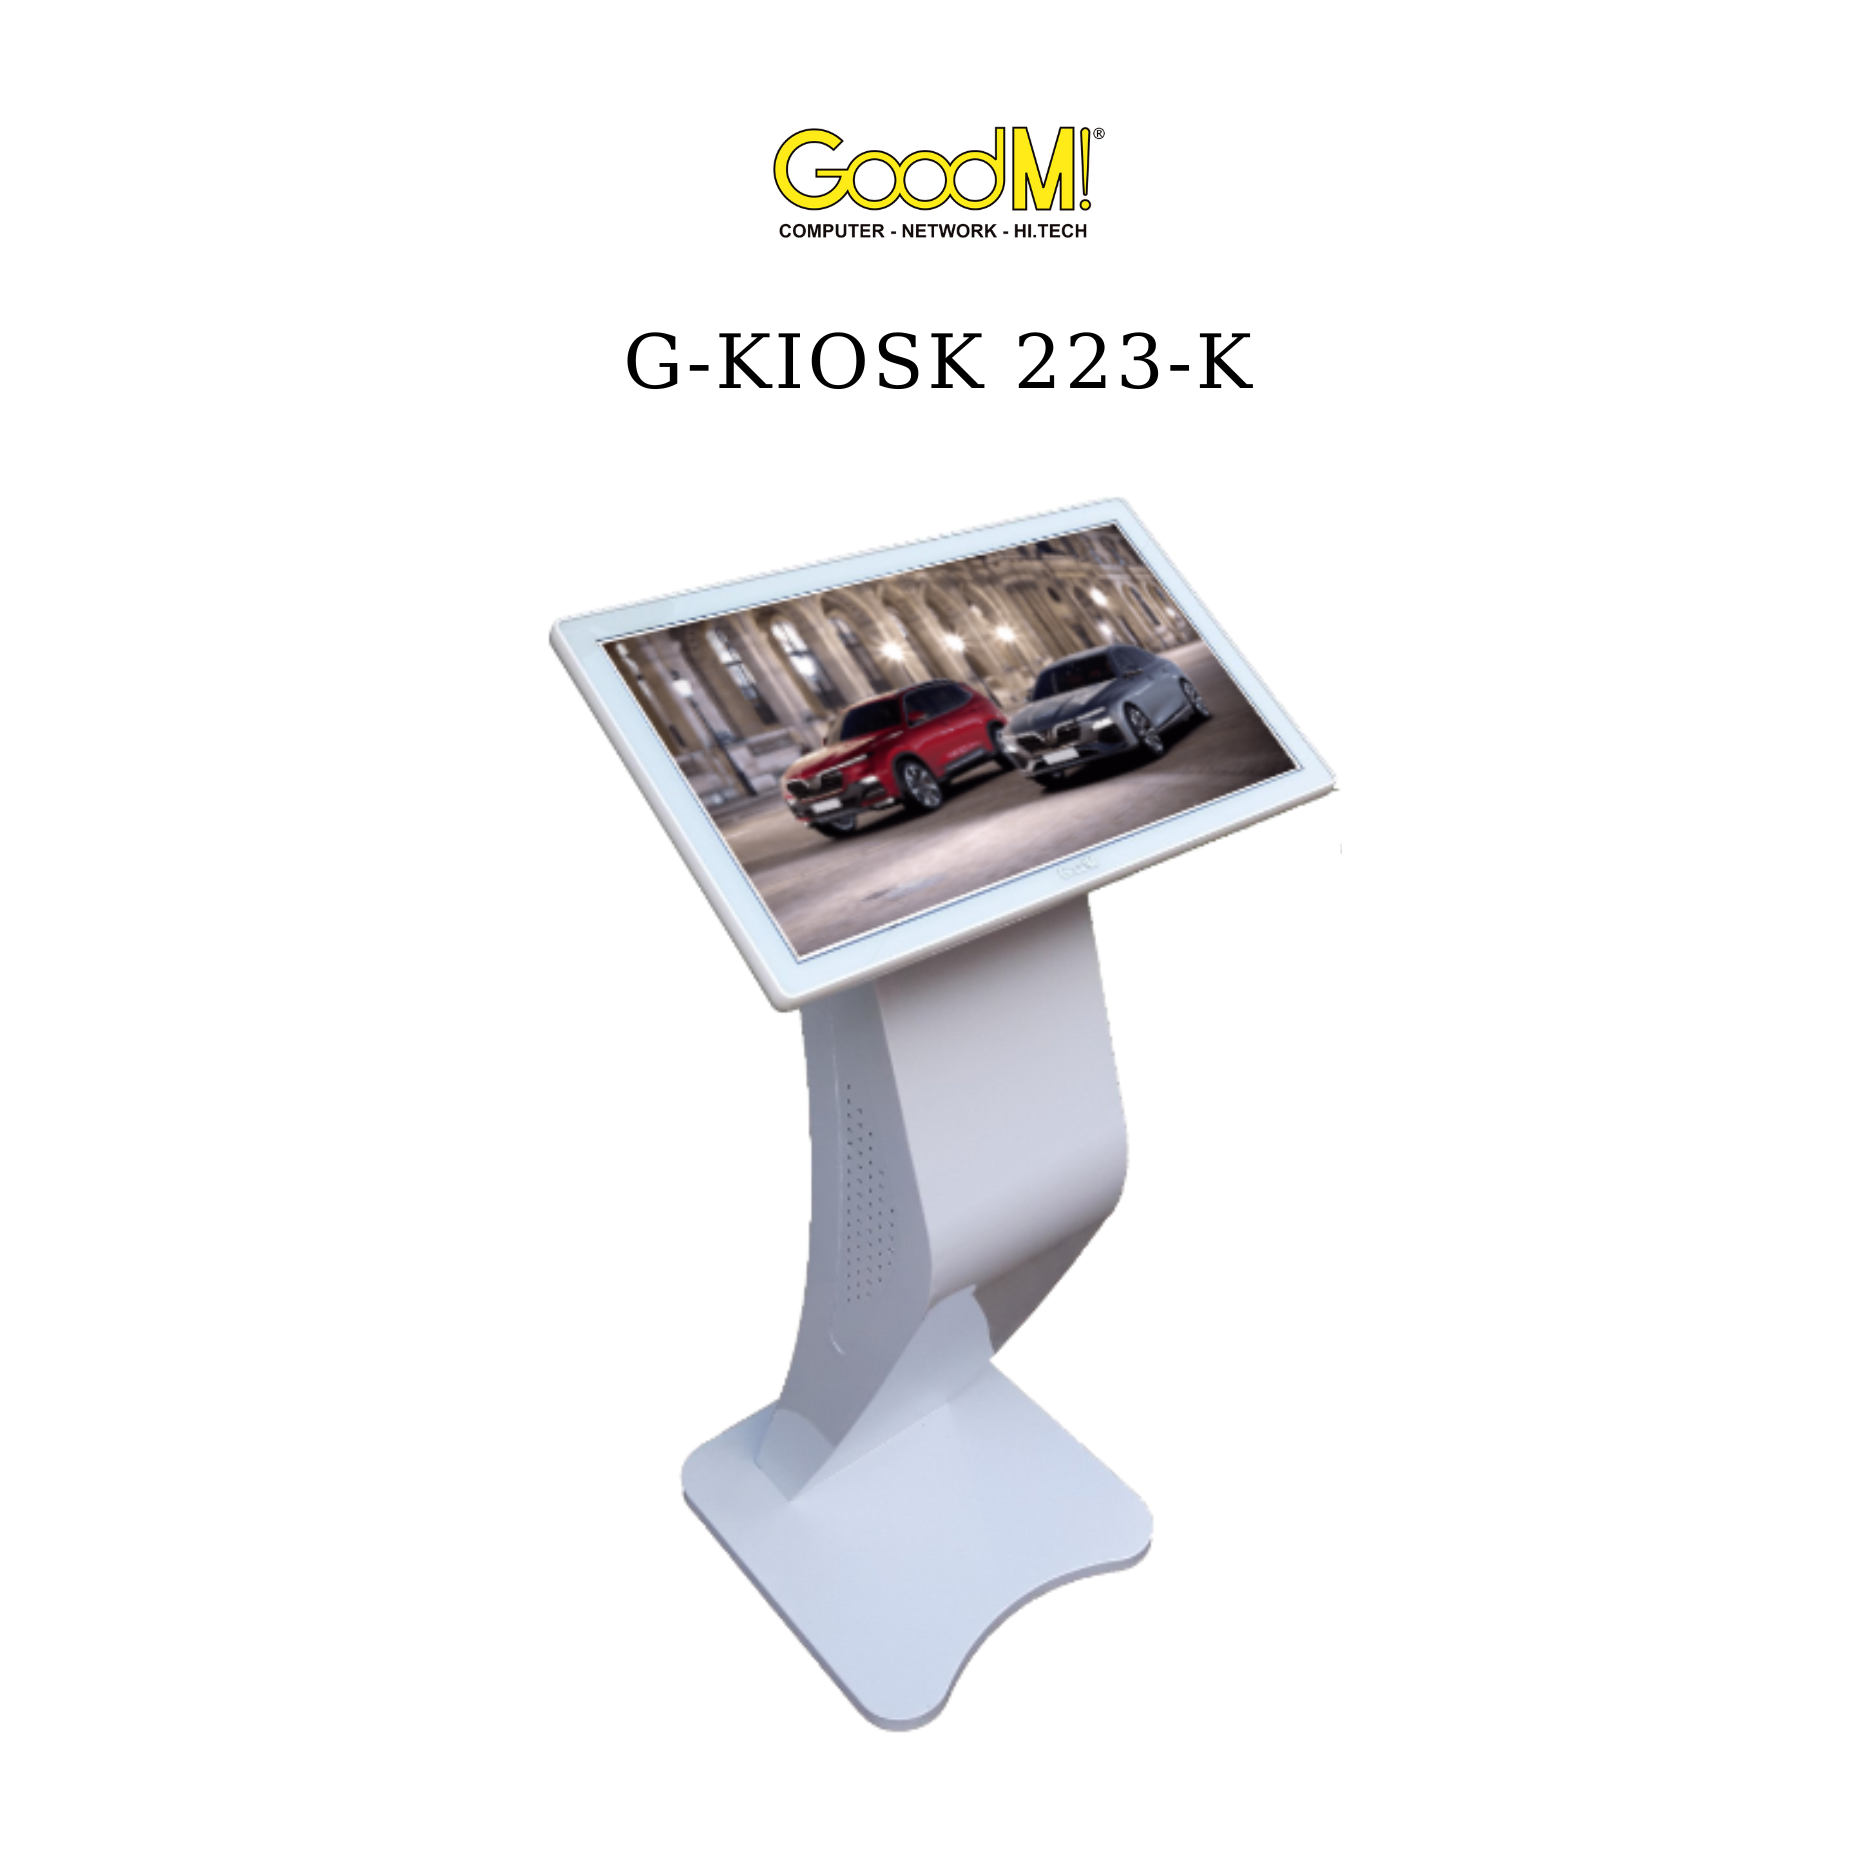  Kiosk Tra Cứu Thông Tin GoodM GKiosk 223-K 